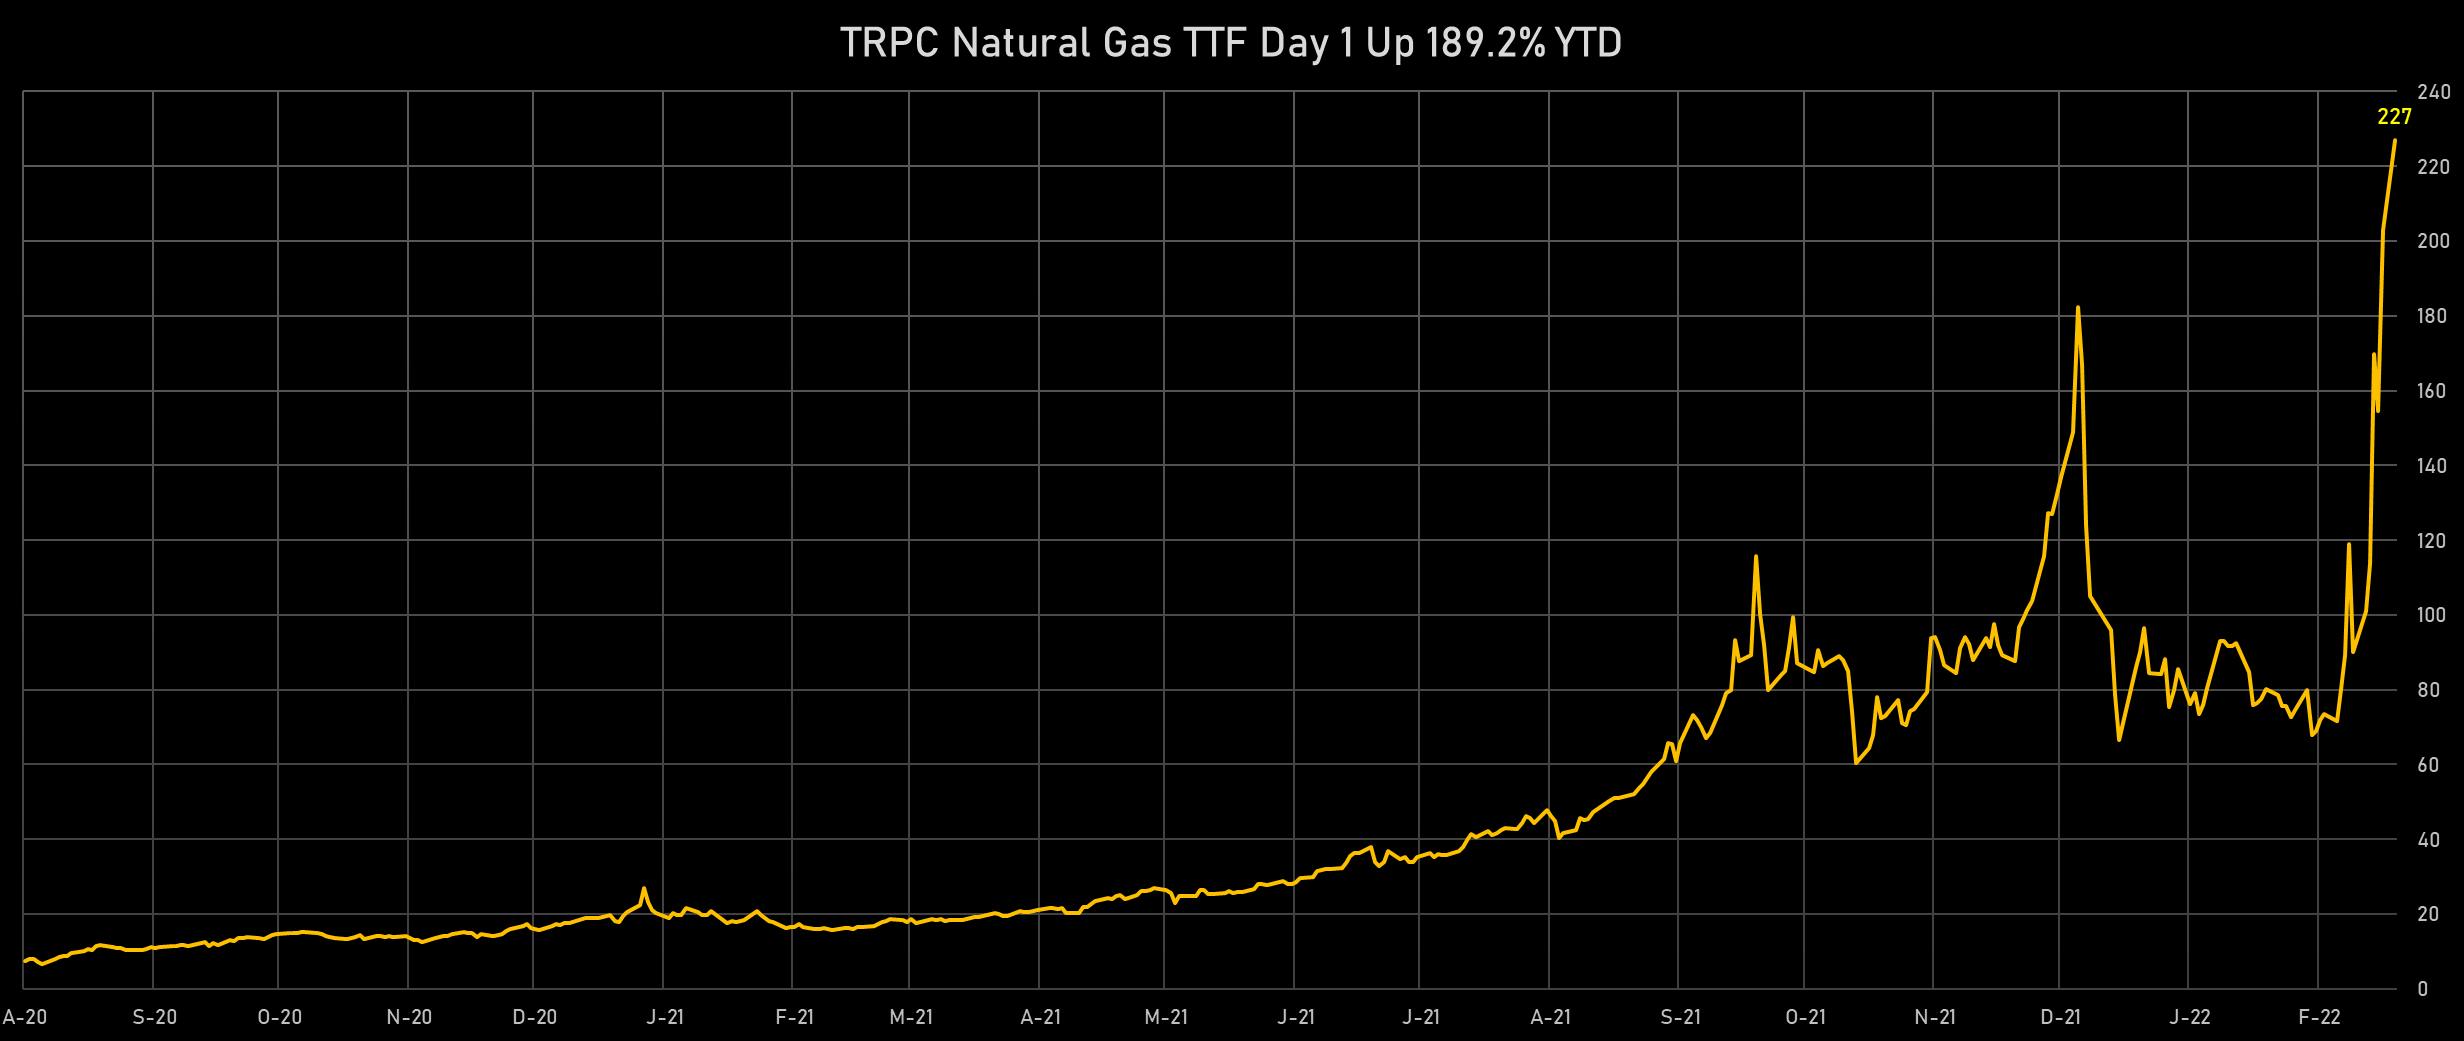 TTF Natural Gas | Sources: phipost.com, Refinitiv data